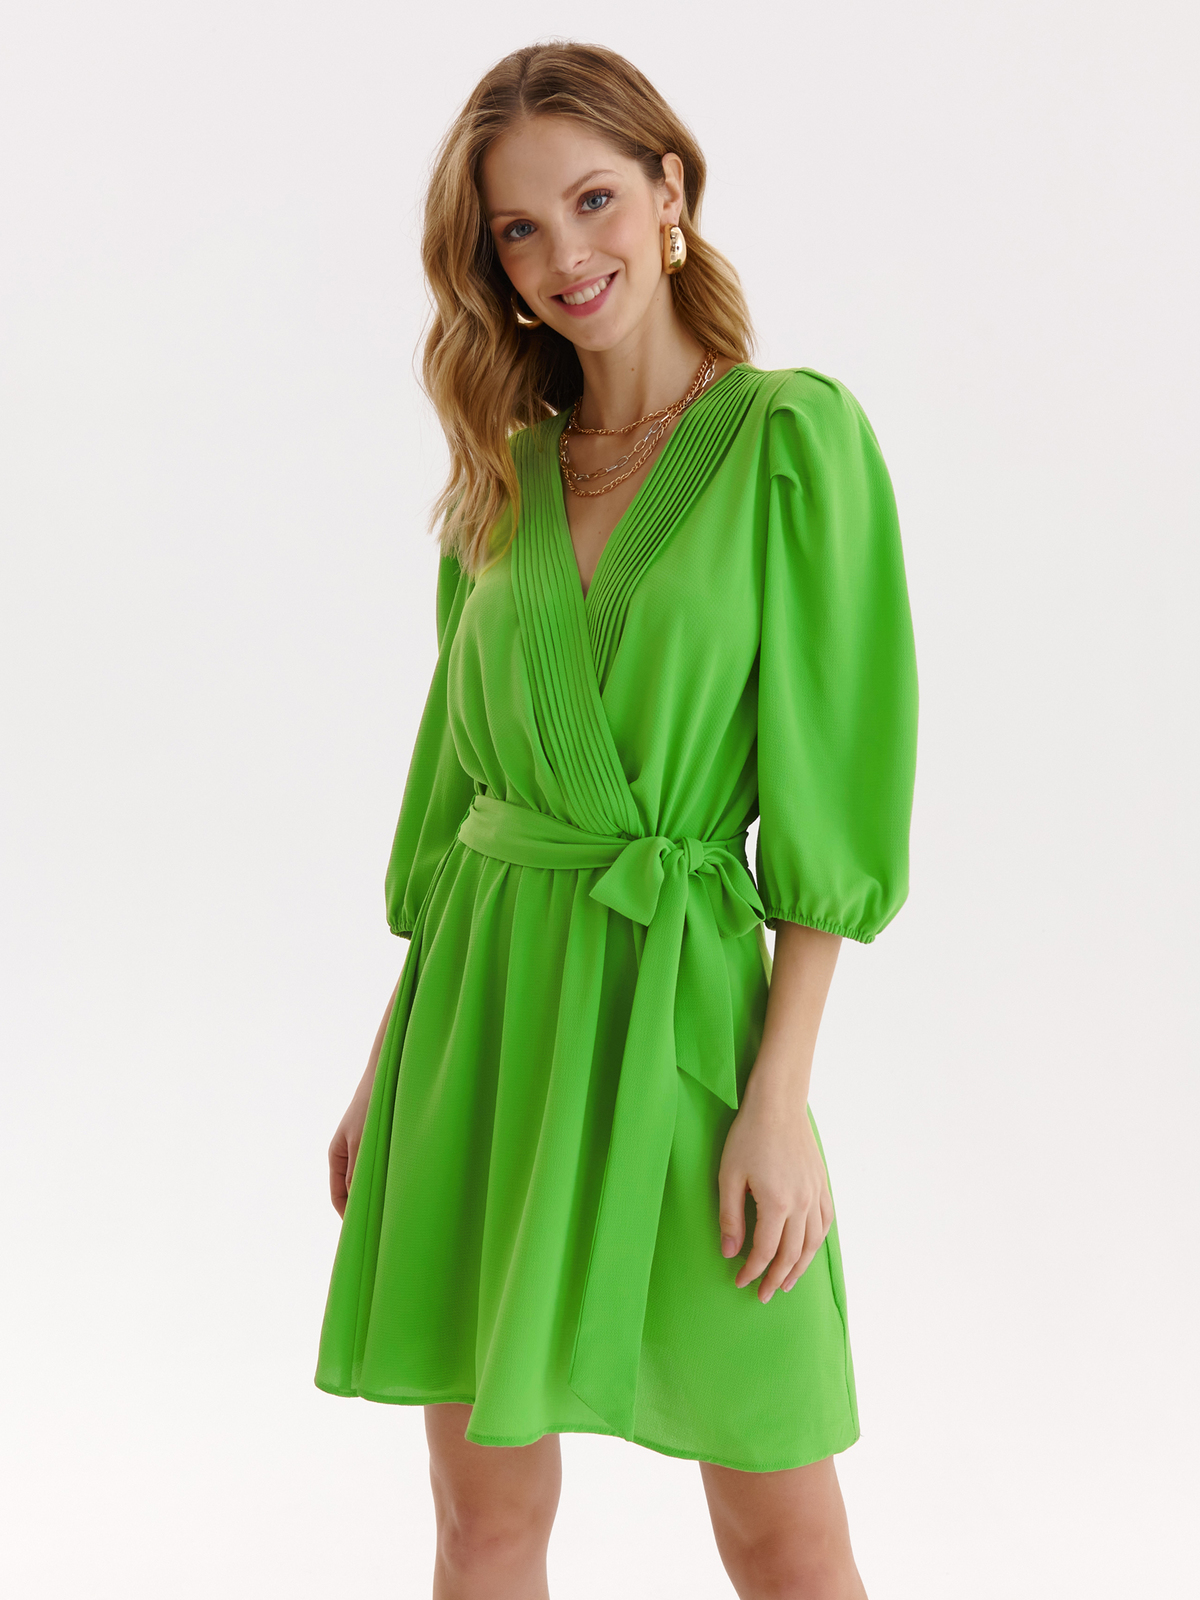 Rochie din material subtire verde scurta in clos cu elastic in talie si maneci bufante - Top Secret